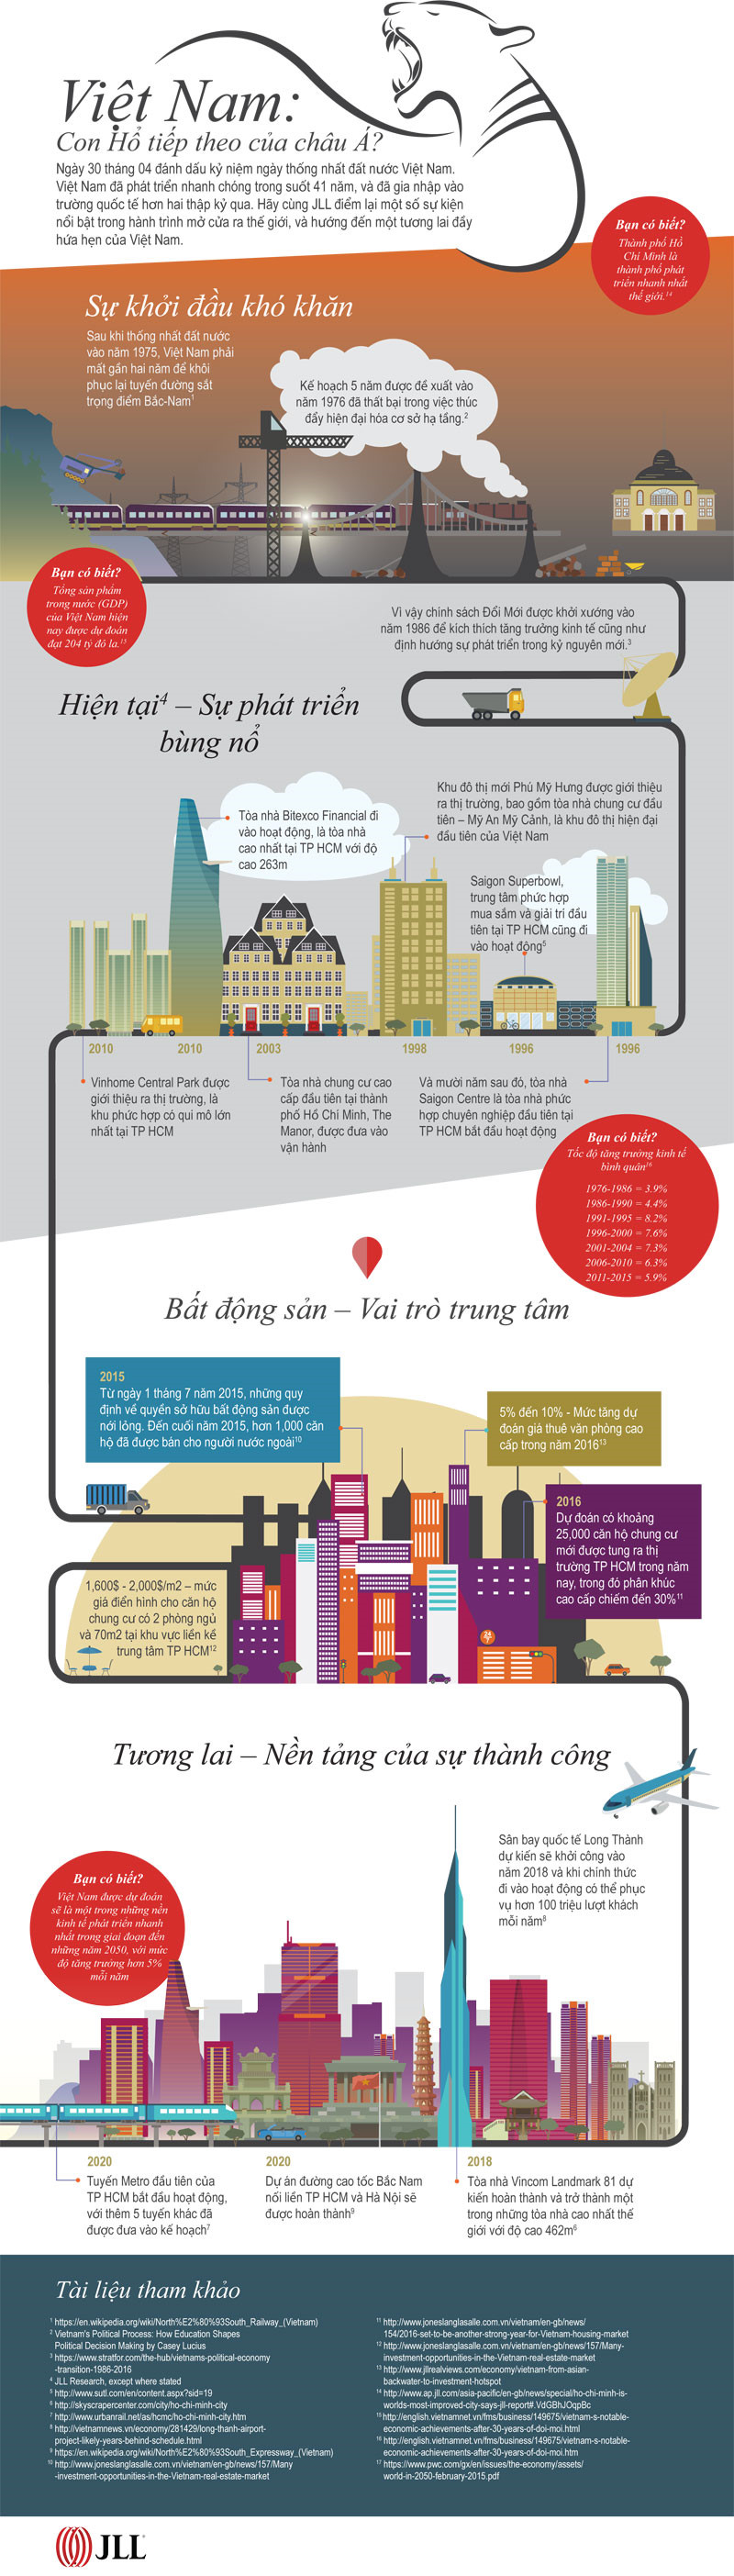 InfoGraphics: Chặng đường phát triển của thị trường bất động sản Việt Nam